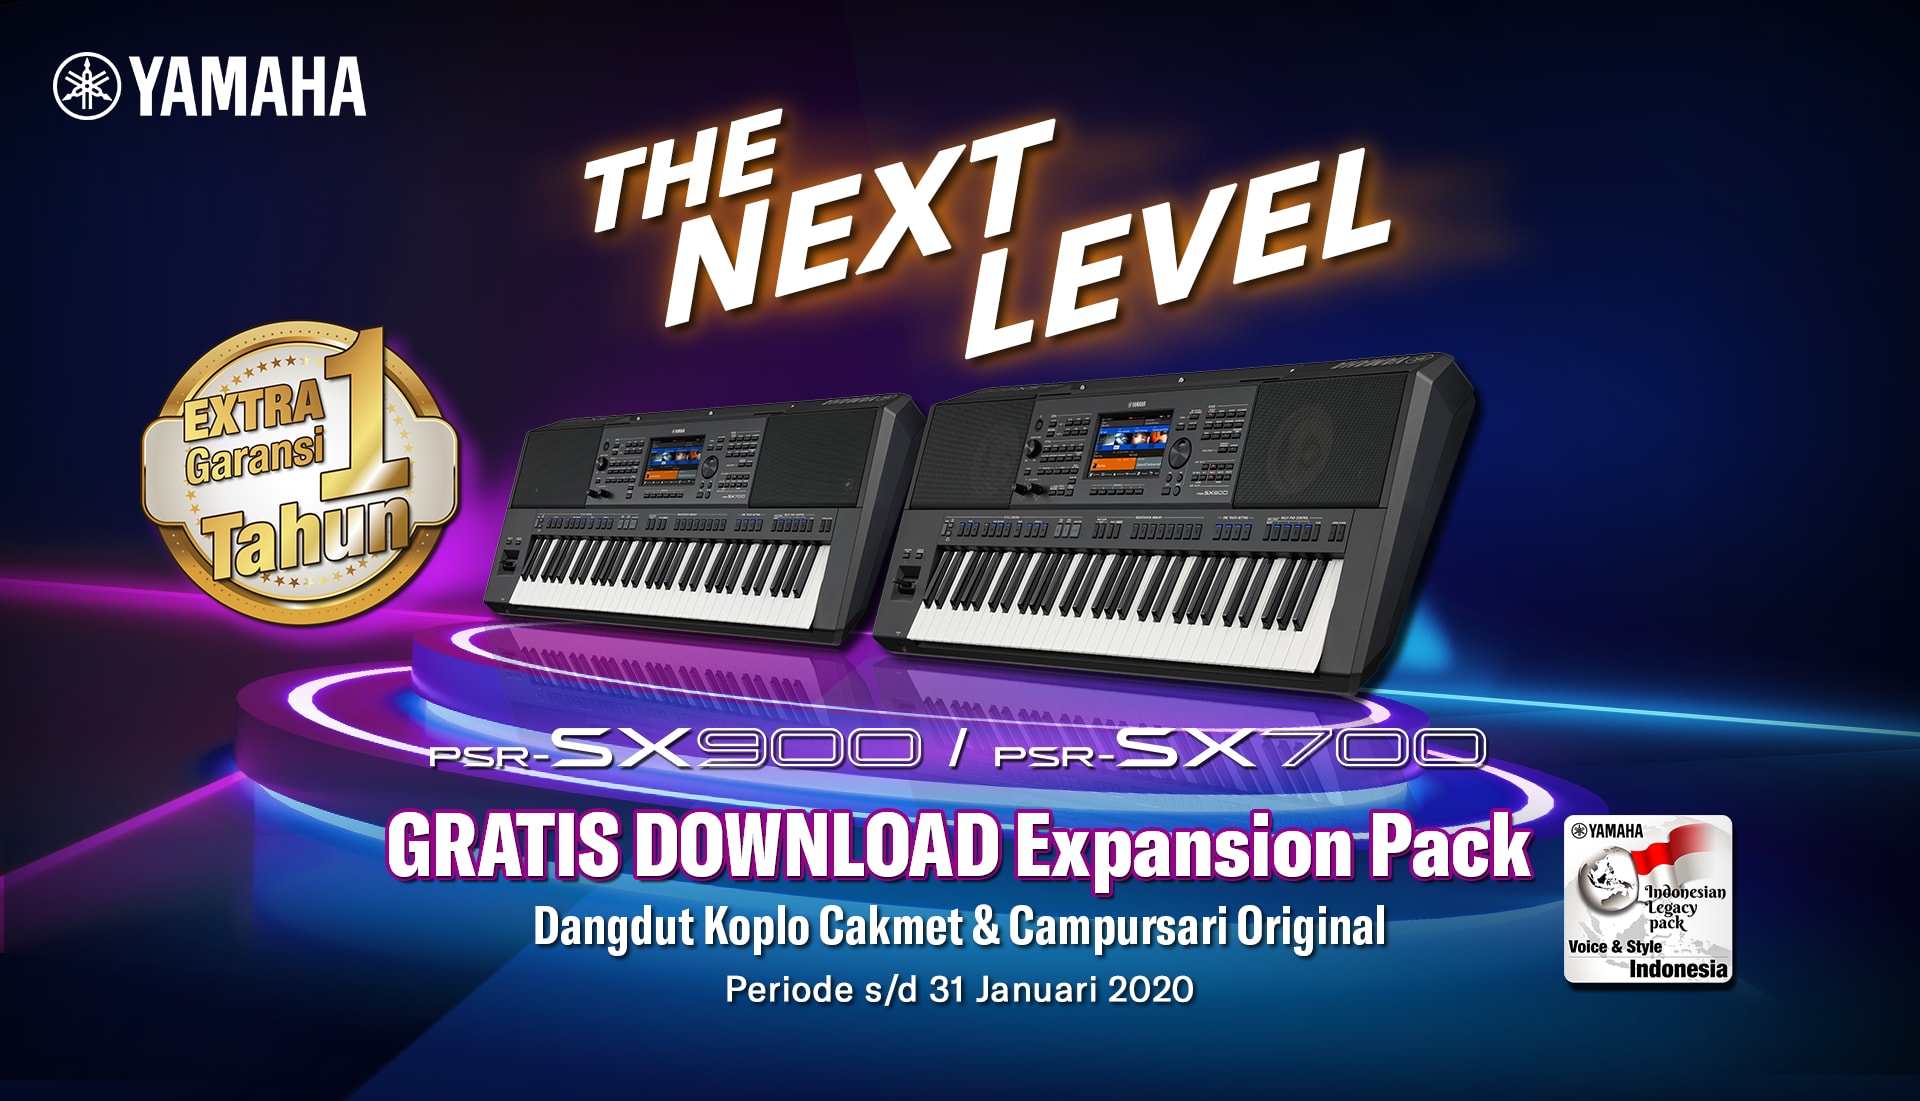 Dapatkan Extra Garansi 1 Tahun Dan Gratis Download Expansion Pack